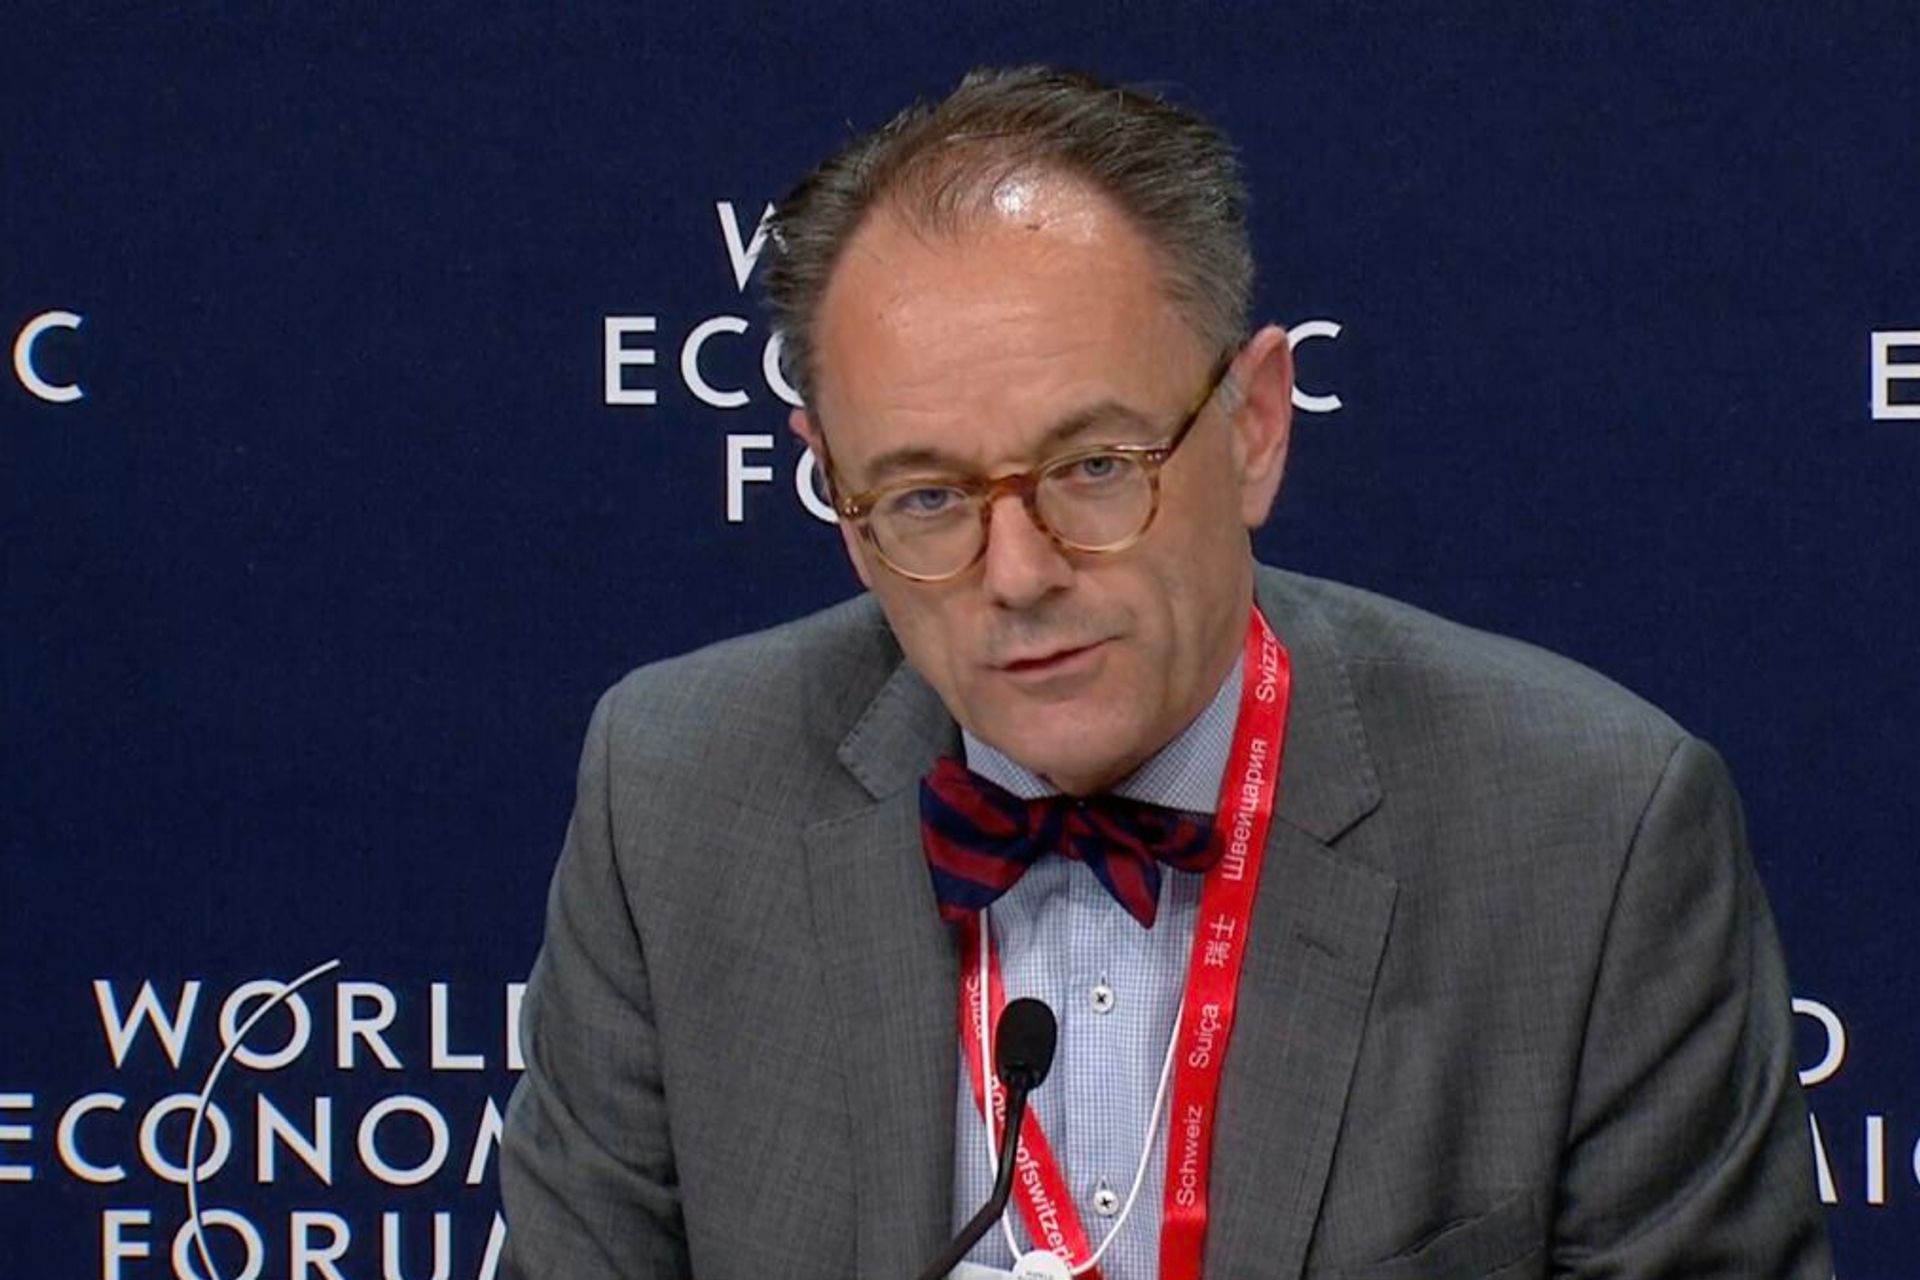 Benedikt Wechsler je veľvyslanec a vedúci oddelenia digitalizácie Federálneho ministerstva zahraničných vecí (FDFA) Švajčiarskej konfederácie